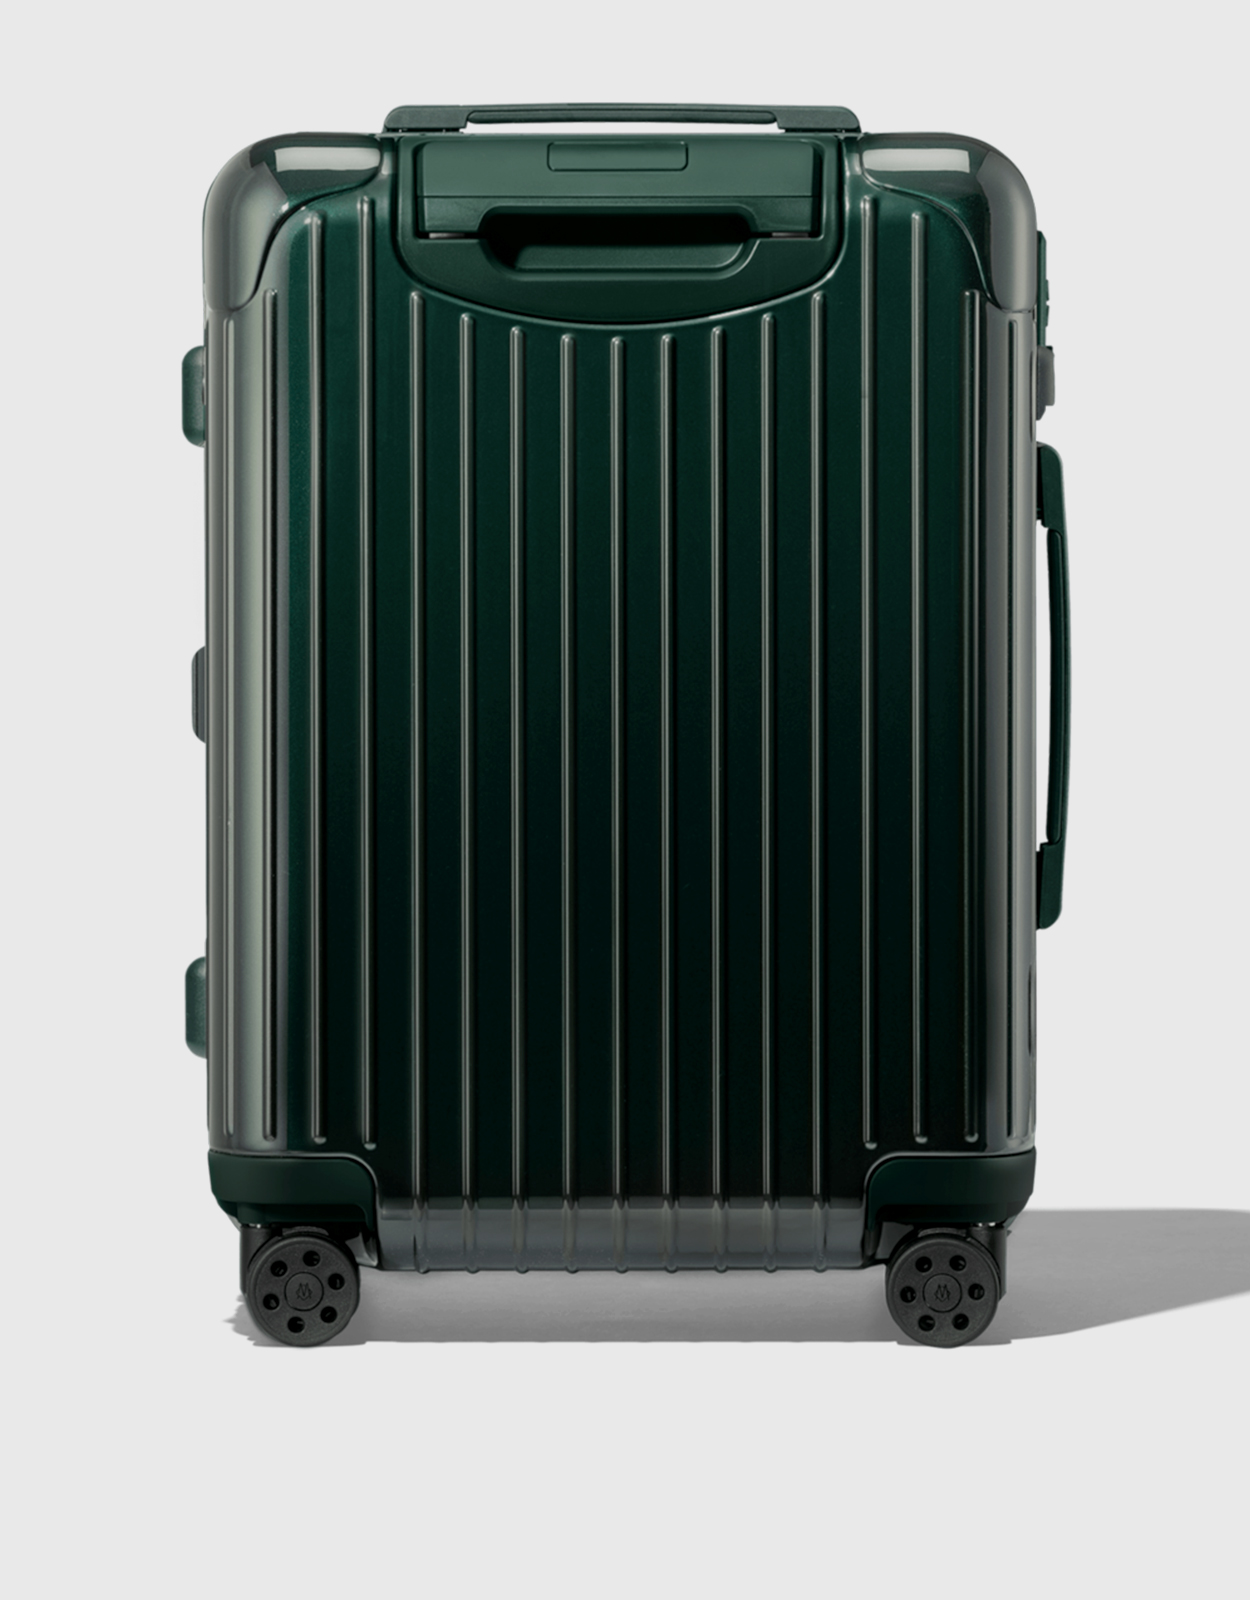 RIMOWA Essential Lite Check-in L luggage in Black